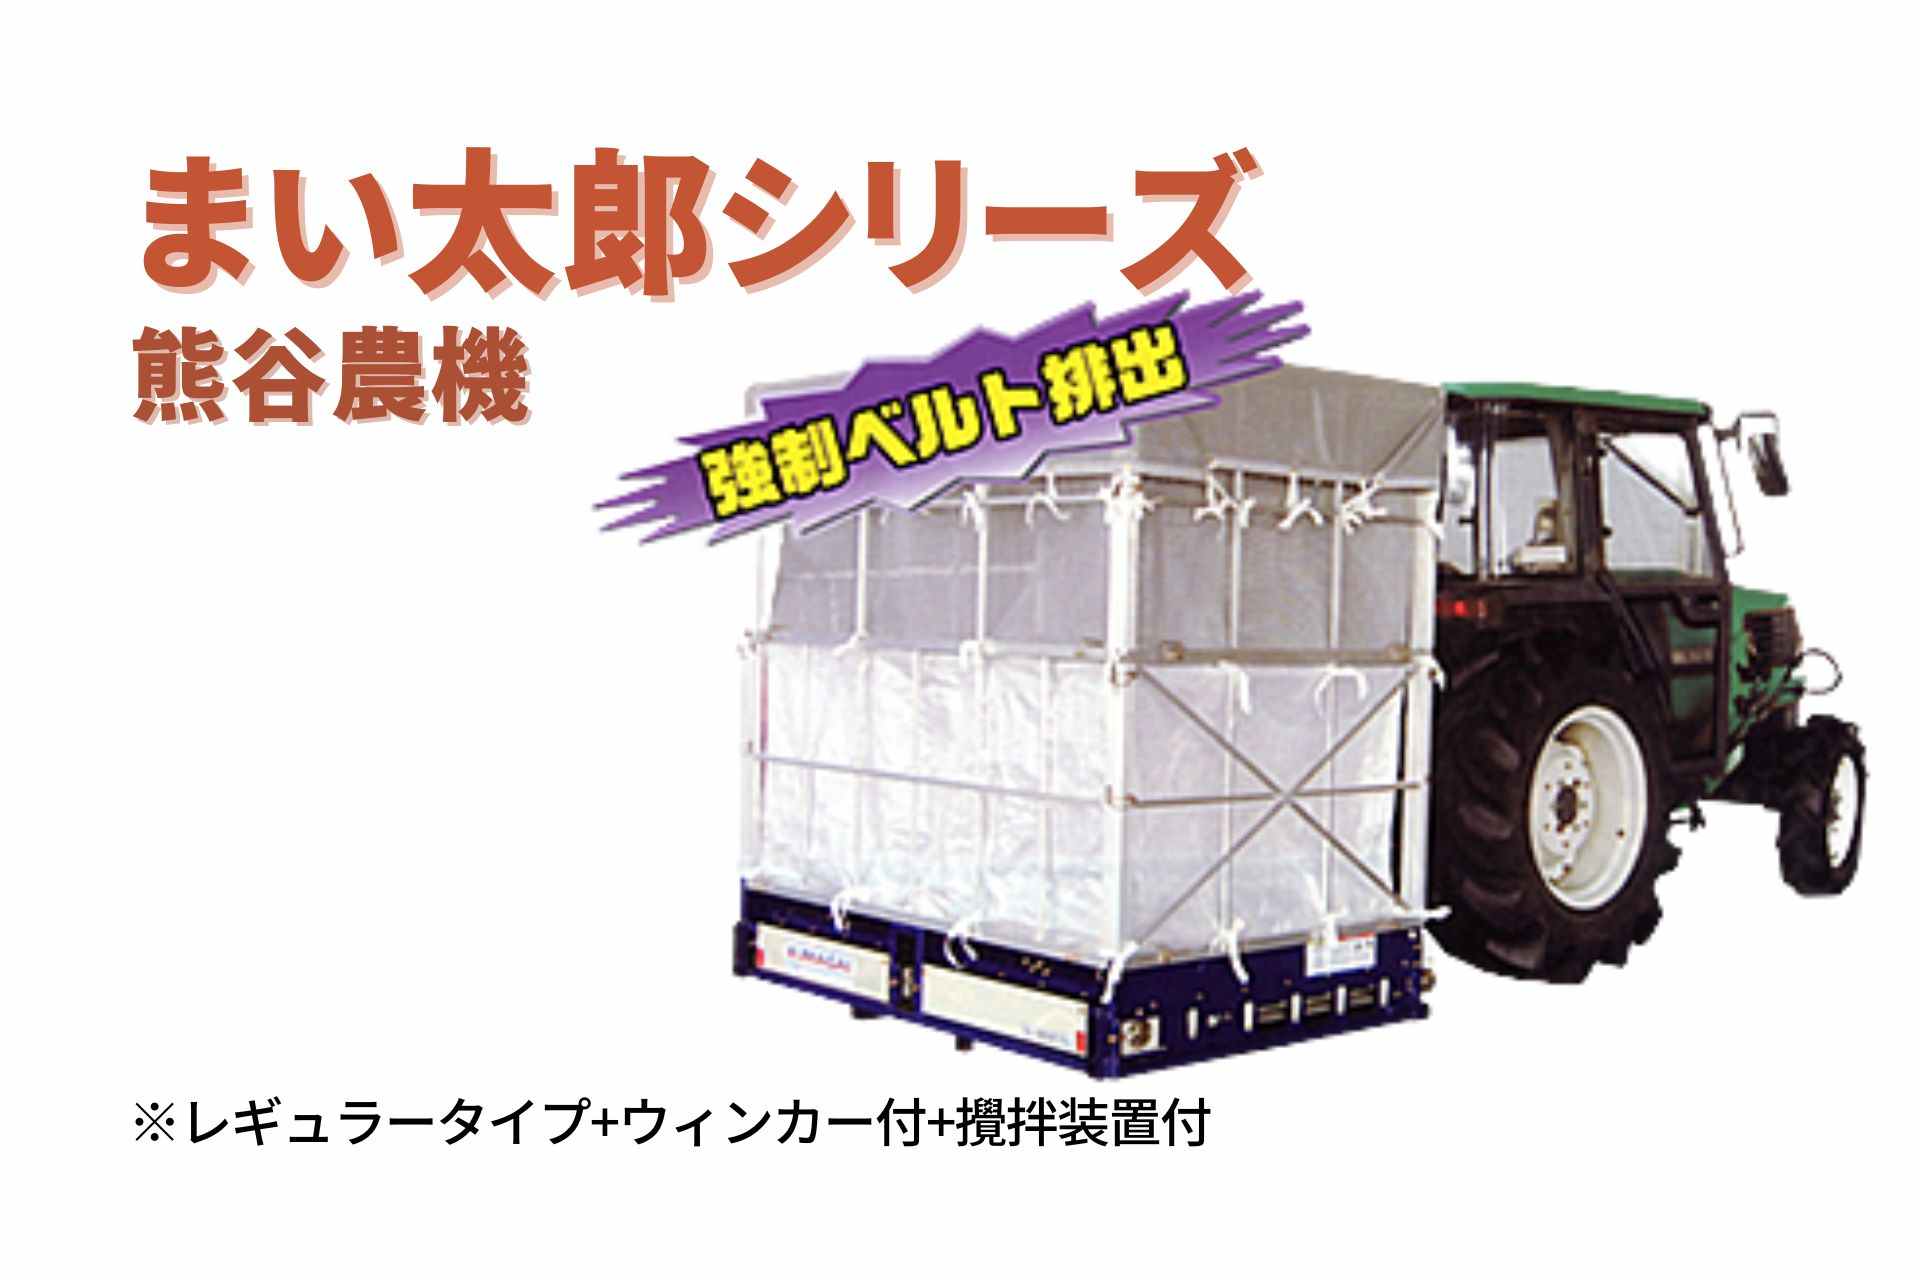 籾殻散布機 まい太郎 レギュラータイプ ウィンカー付 攪拌装置付 MTA-40RW(L) 熊谷農機